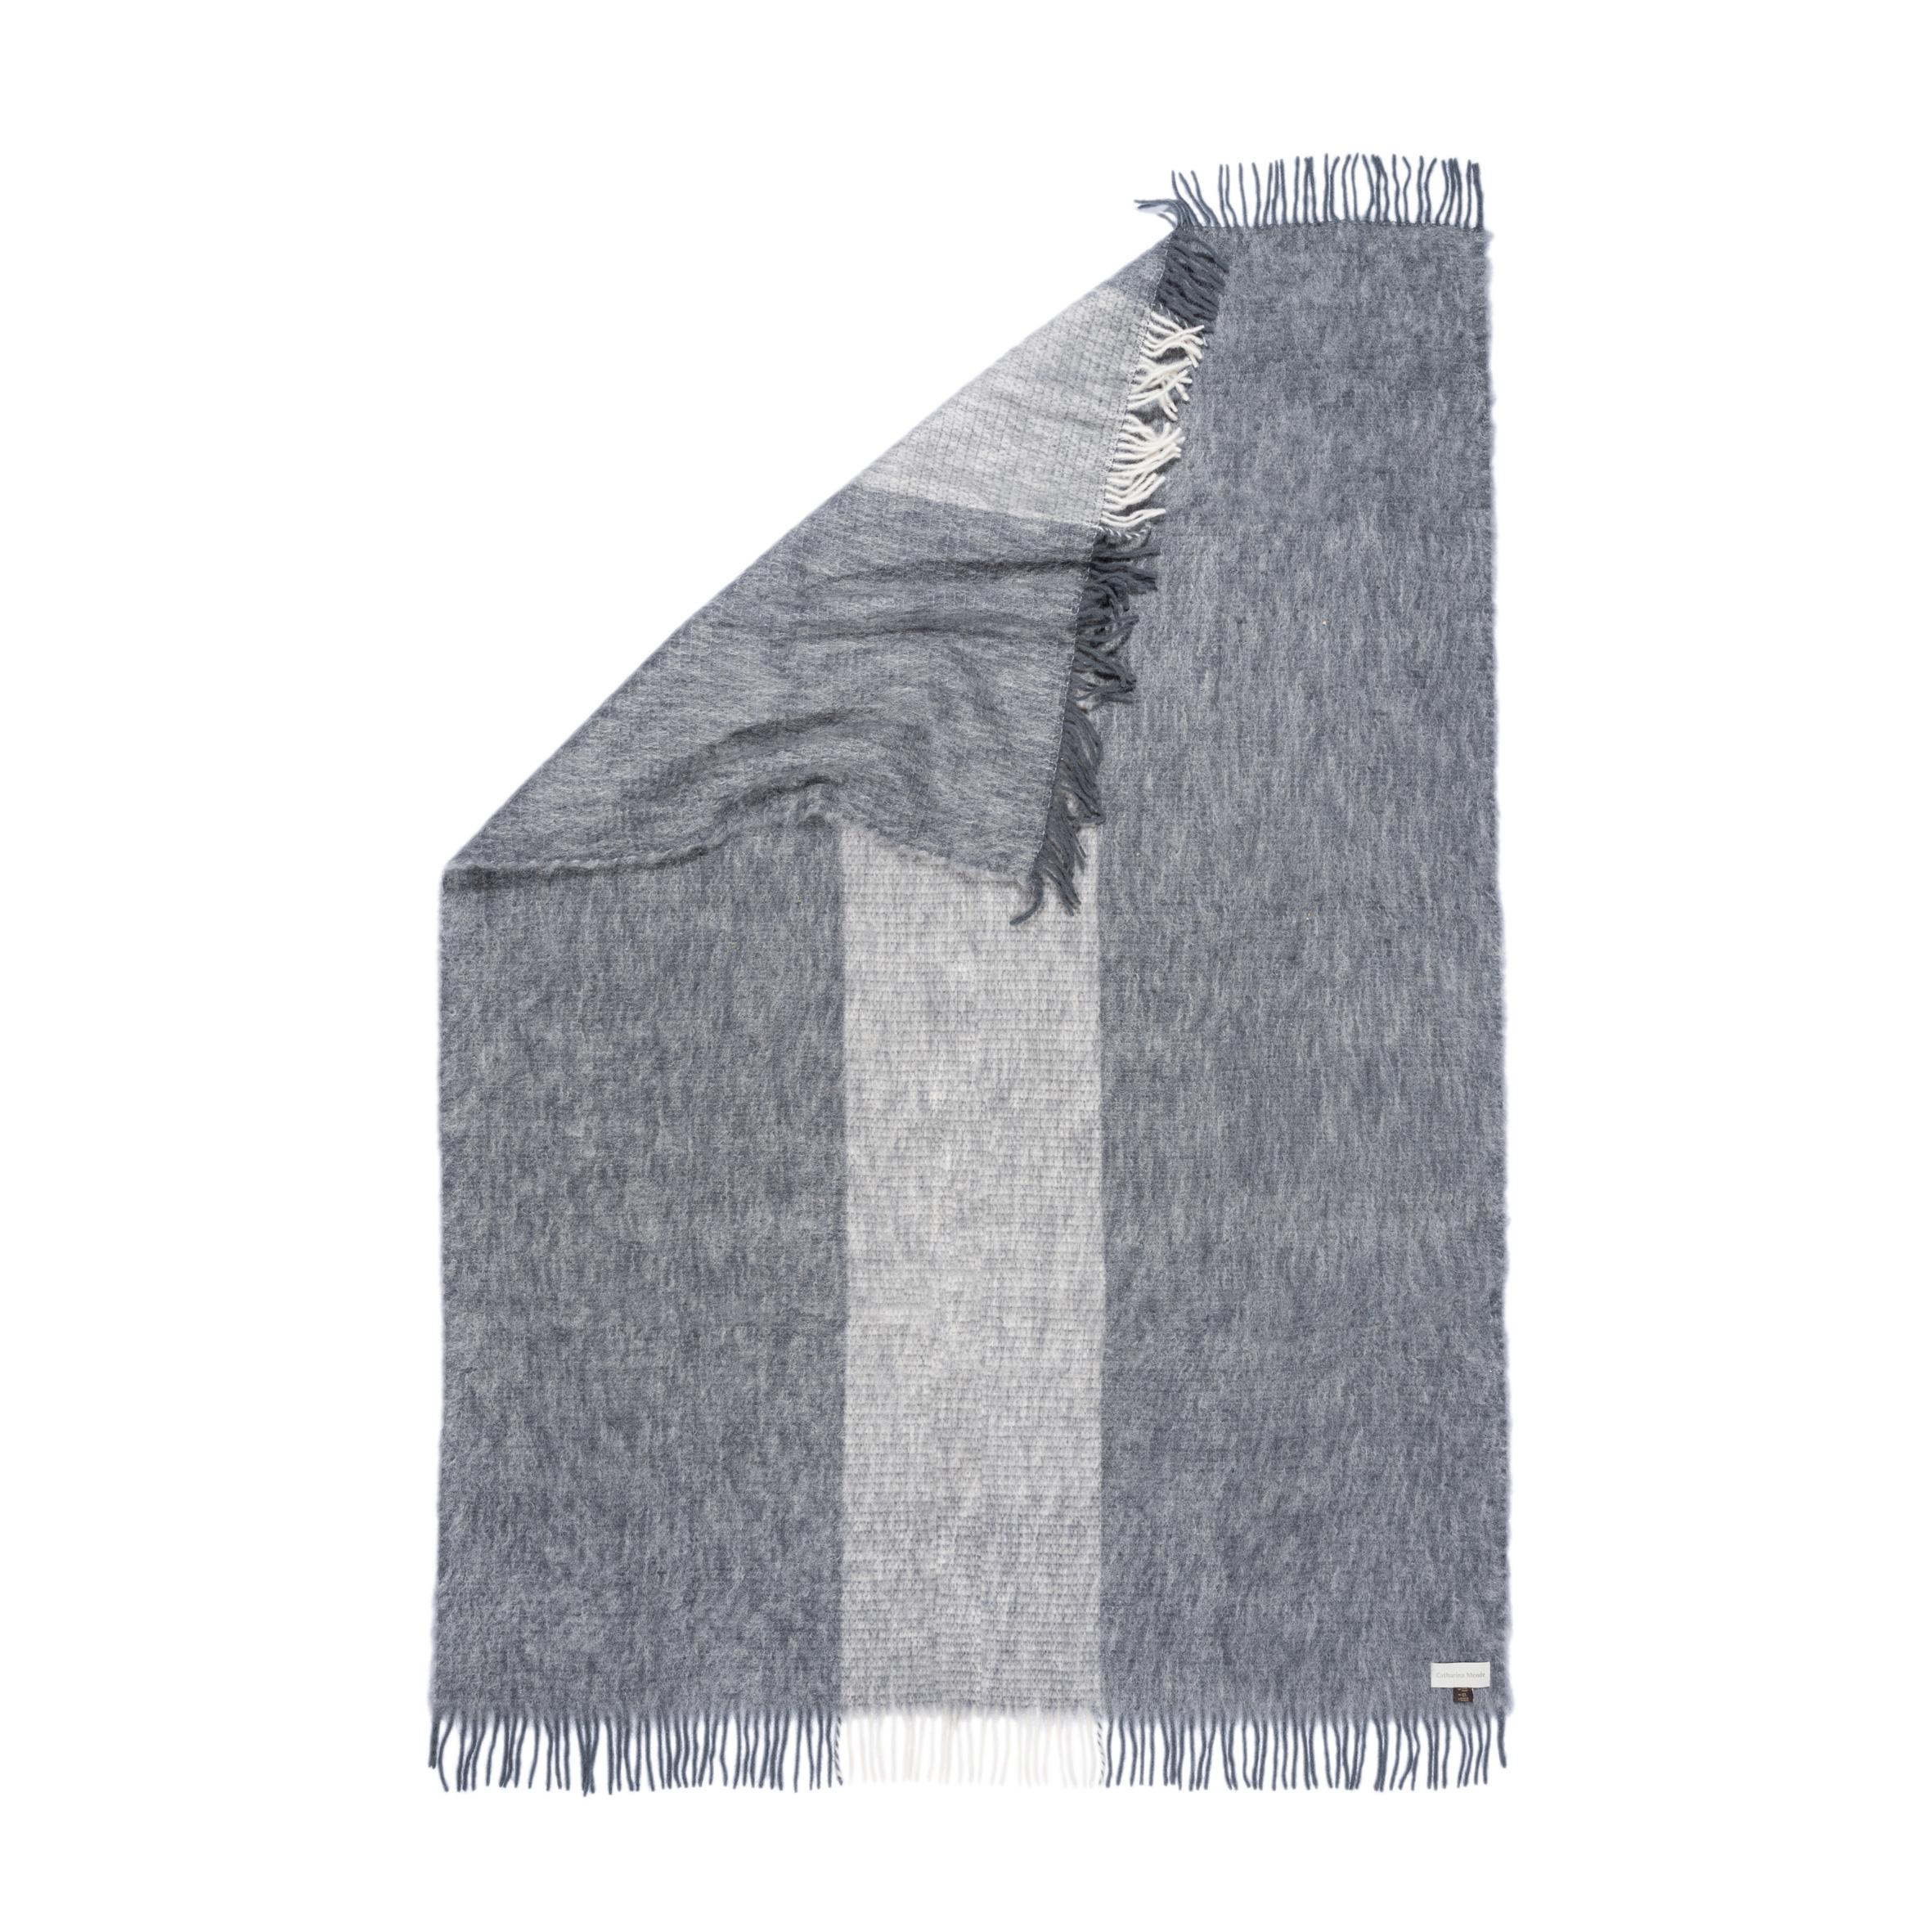 Conçue à Berlin par Catharina Mende, tissée en Espagne avec 50% de mohair, 48% de laine et 2% de polyamide : Cette couverture en mohair gris, flatteuse et réchauffante, est le compagnon idéal pour chaque saison - un favori indispensable pour la